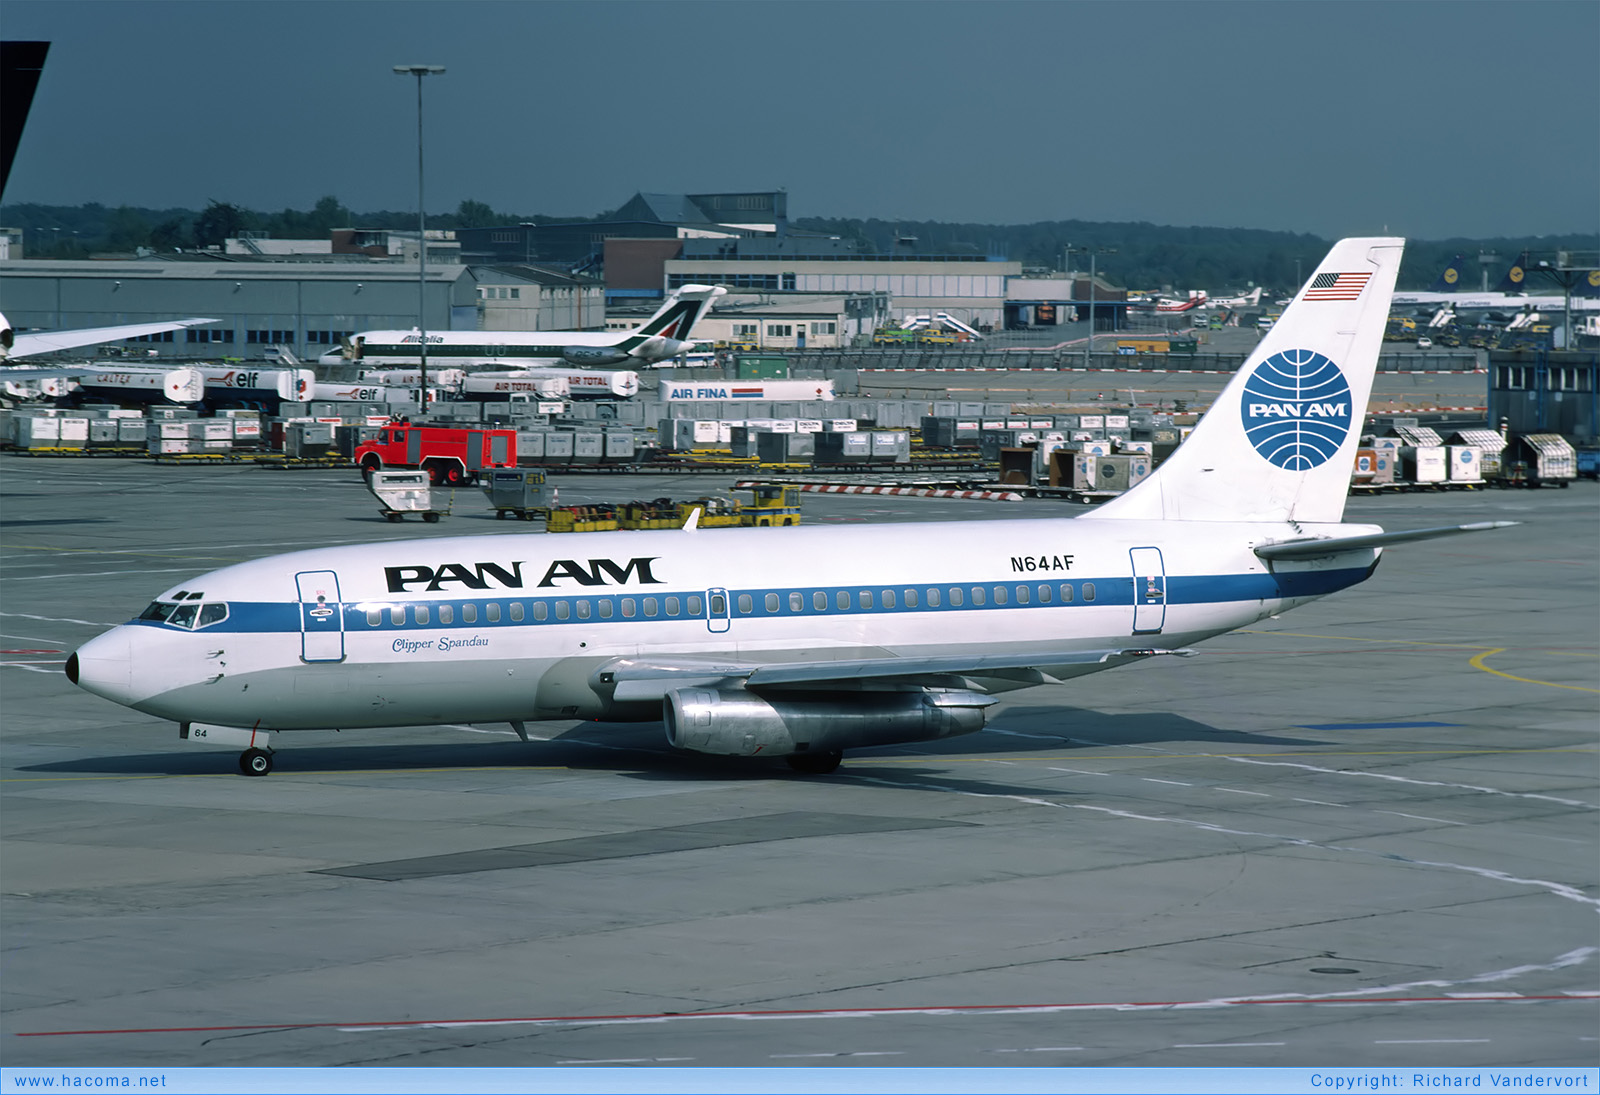 Foto von N64AF - Pan Am Clipper Spandau / San Diego / Morning Glory - Flughafen Frankfurt am Main - 09.1982